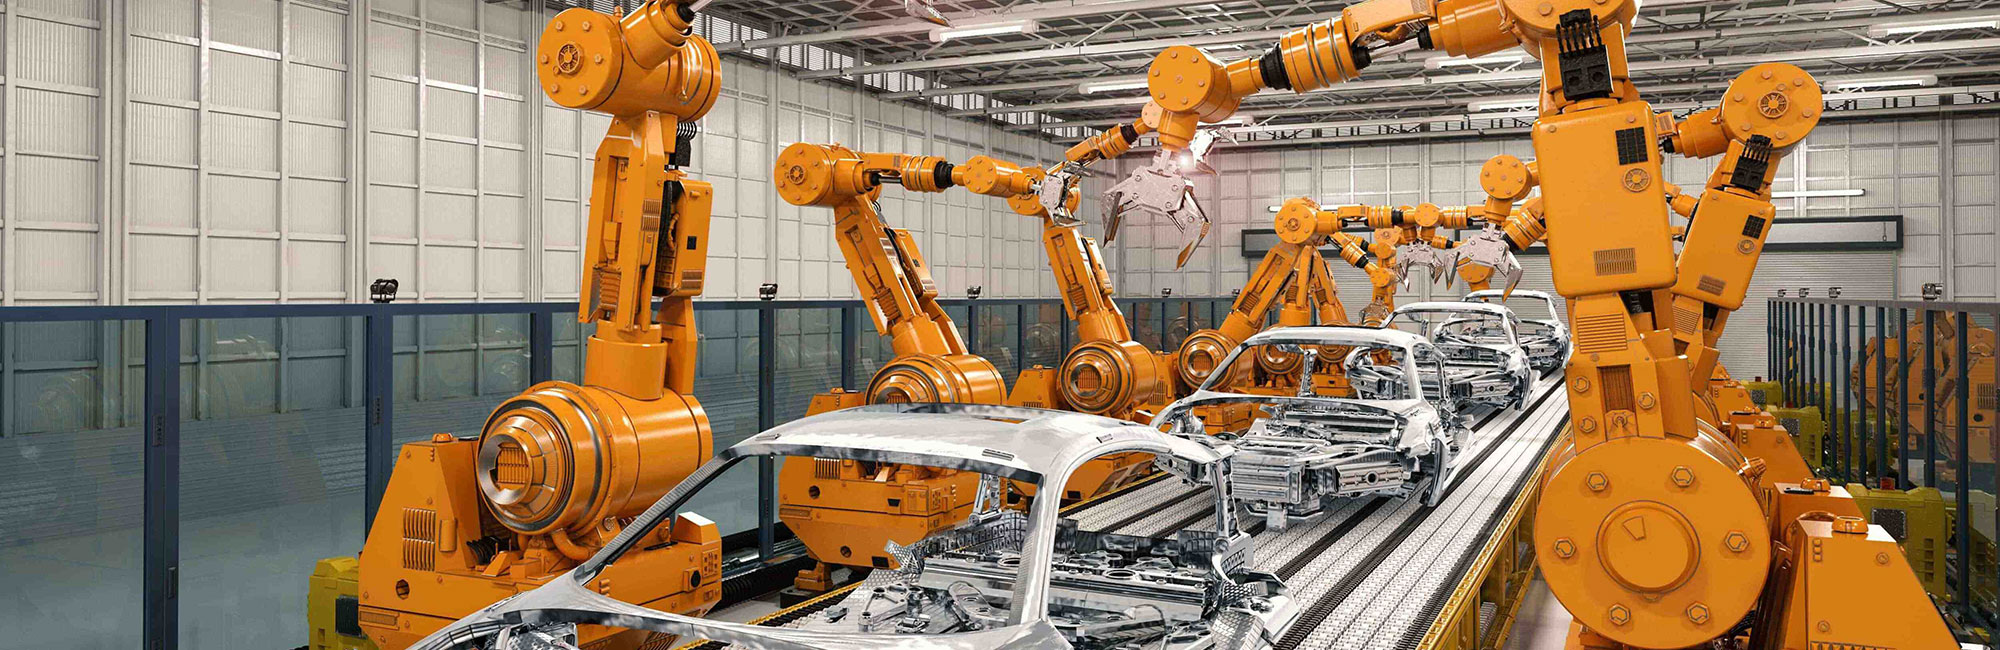 Engel – Automação Industrial – Engenharia e Projetos